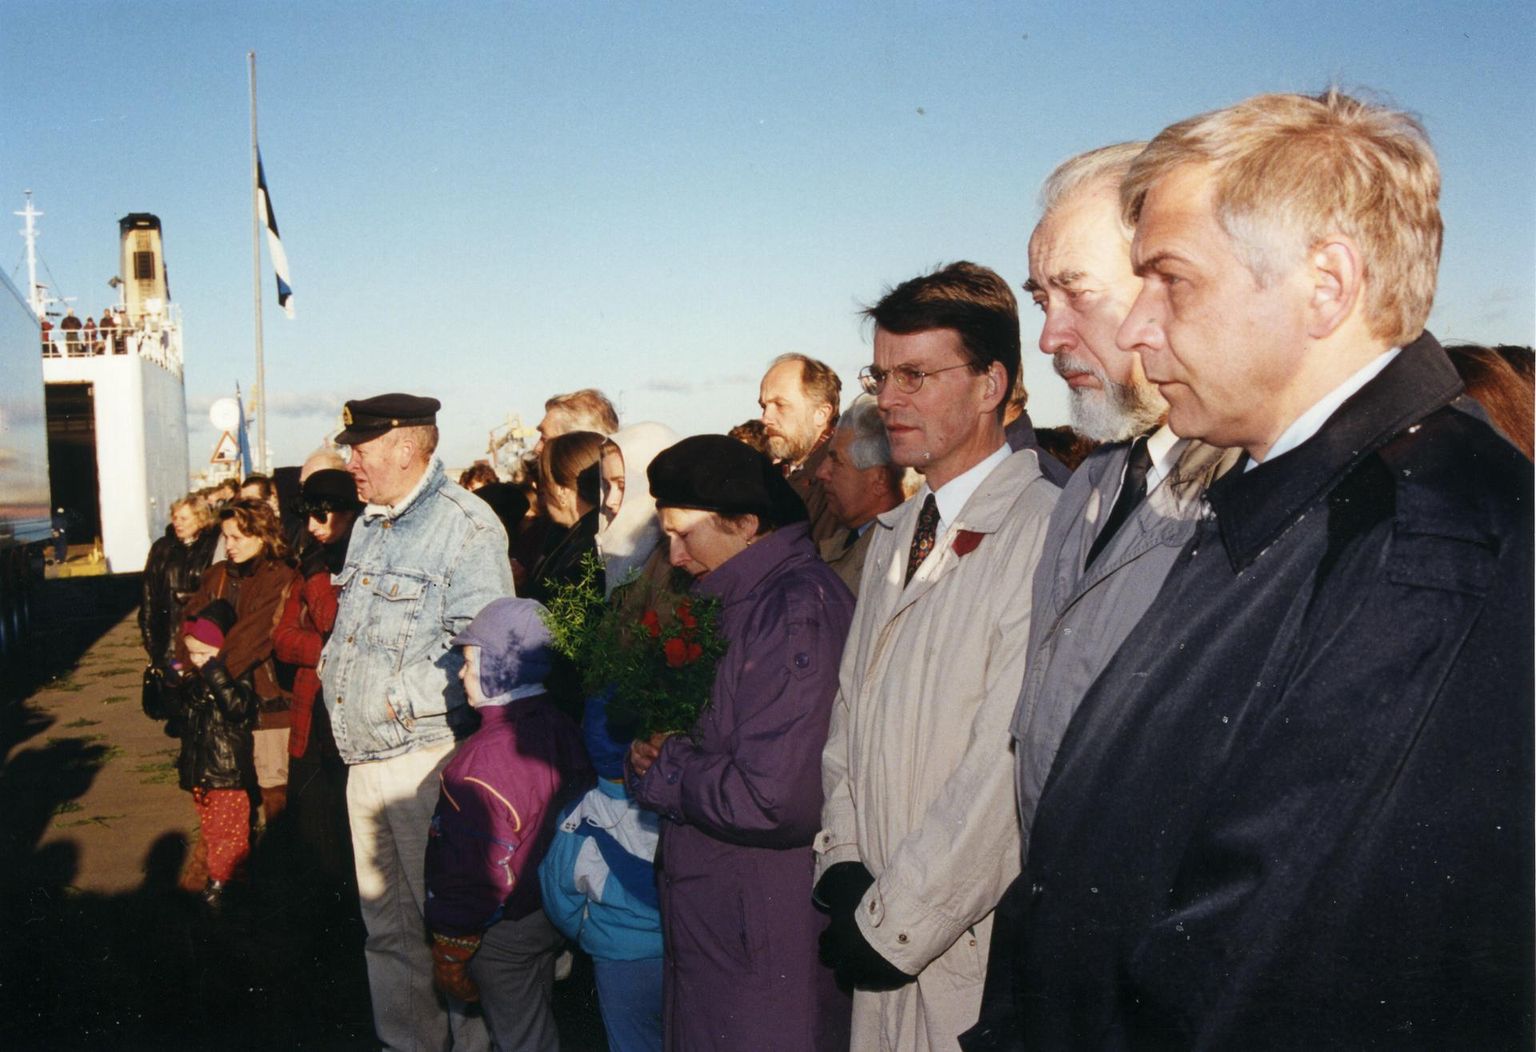 Глава комиссии по расследованию гибели парома «Эстония» Анди Мейстер в порту Мууга при передаче тел погибших. Слева от него мэр Таллинна Яак Тамме, справа — посол Швеции Ларс Арне Грундберг.